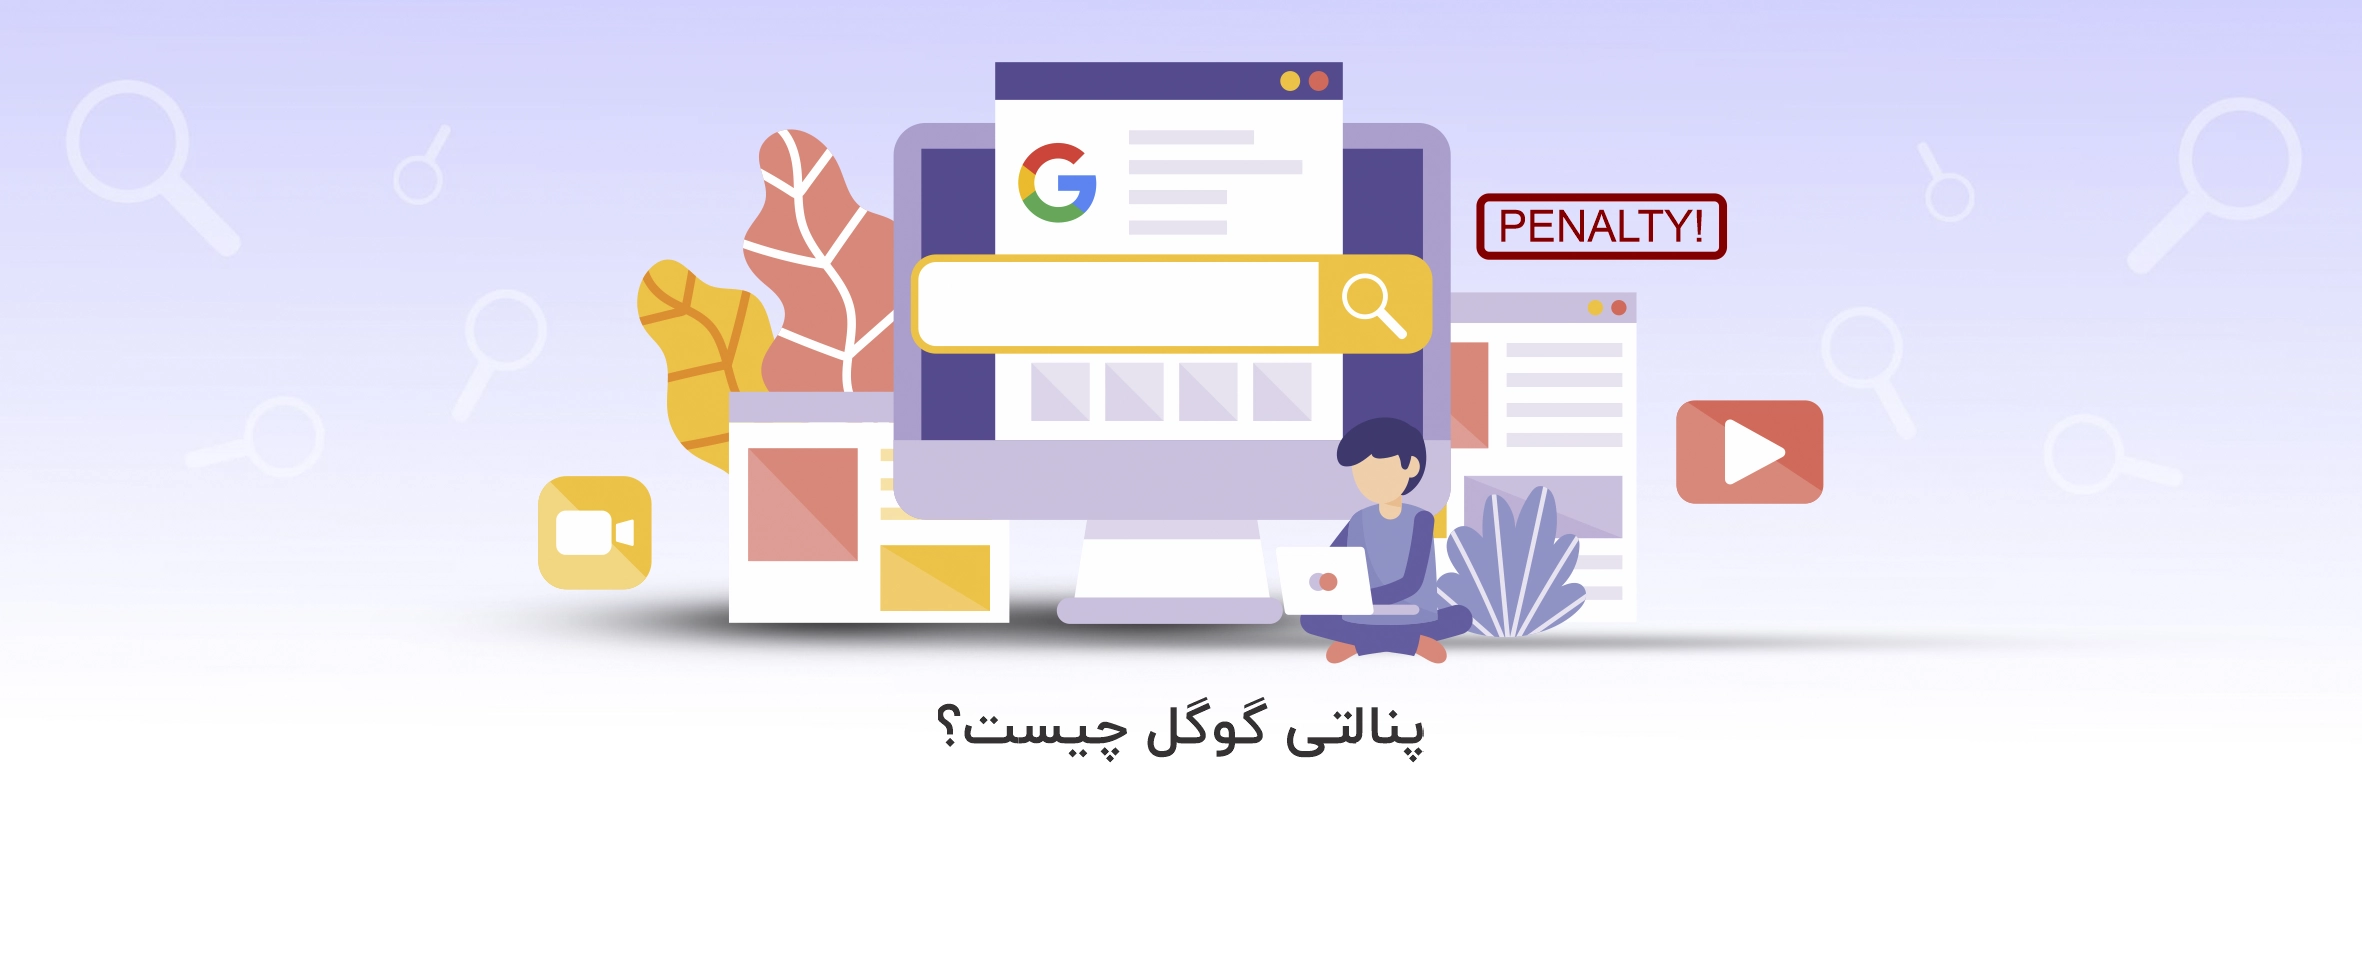 پنالتی گوگل چیست؟ و نکات مهم درباره Google Penalty - آذرسیس